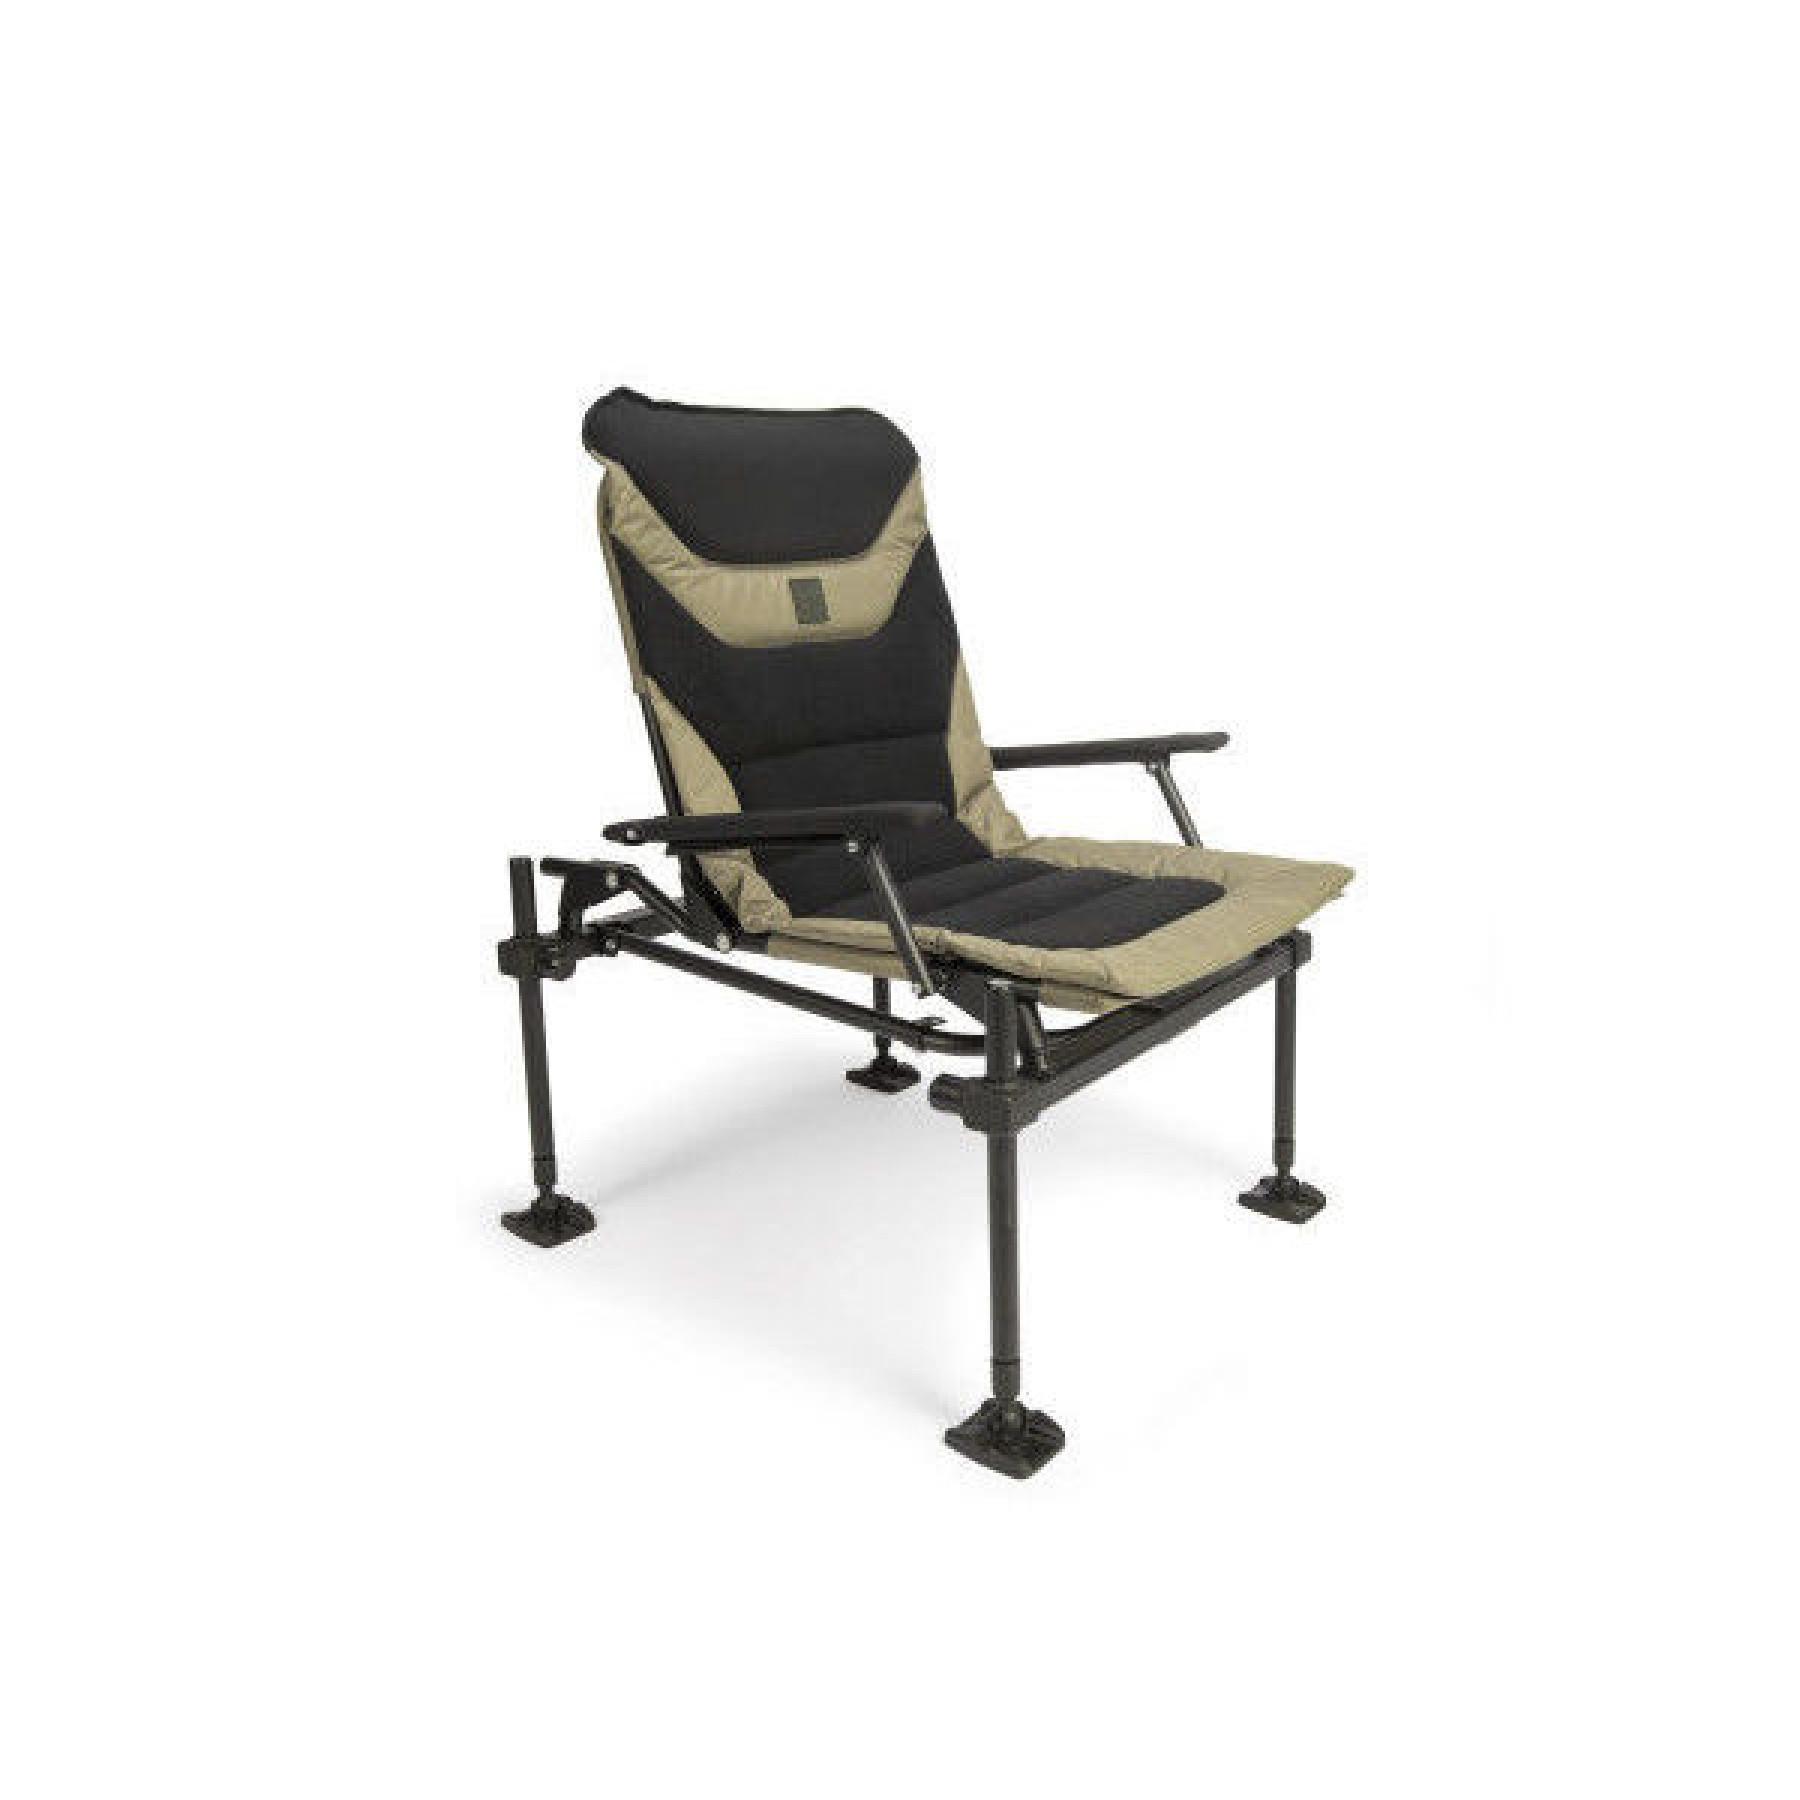 Hoofdkantoor Korum X25 Accessory Chair